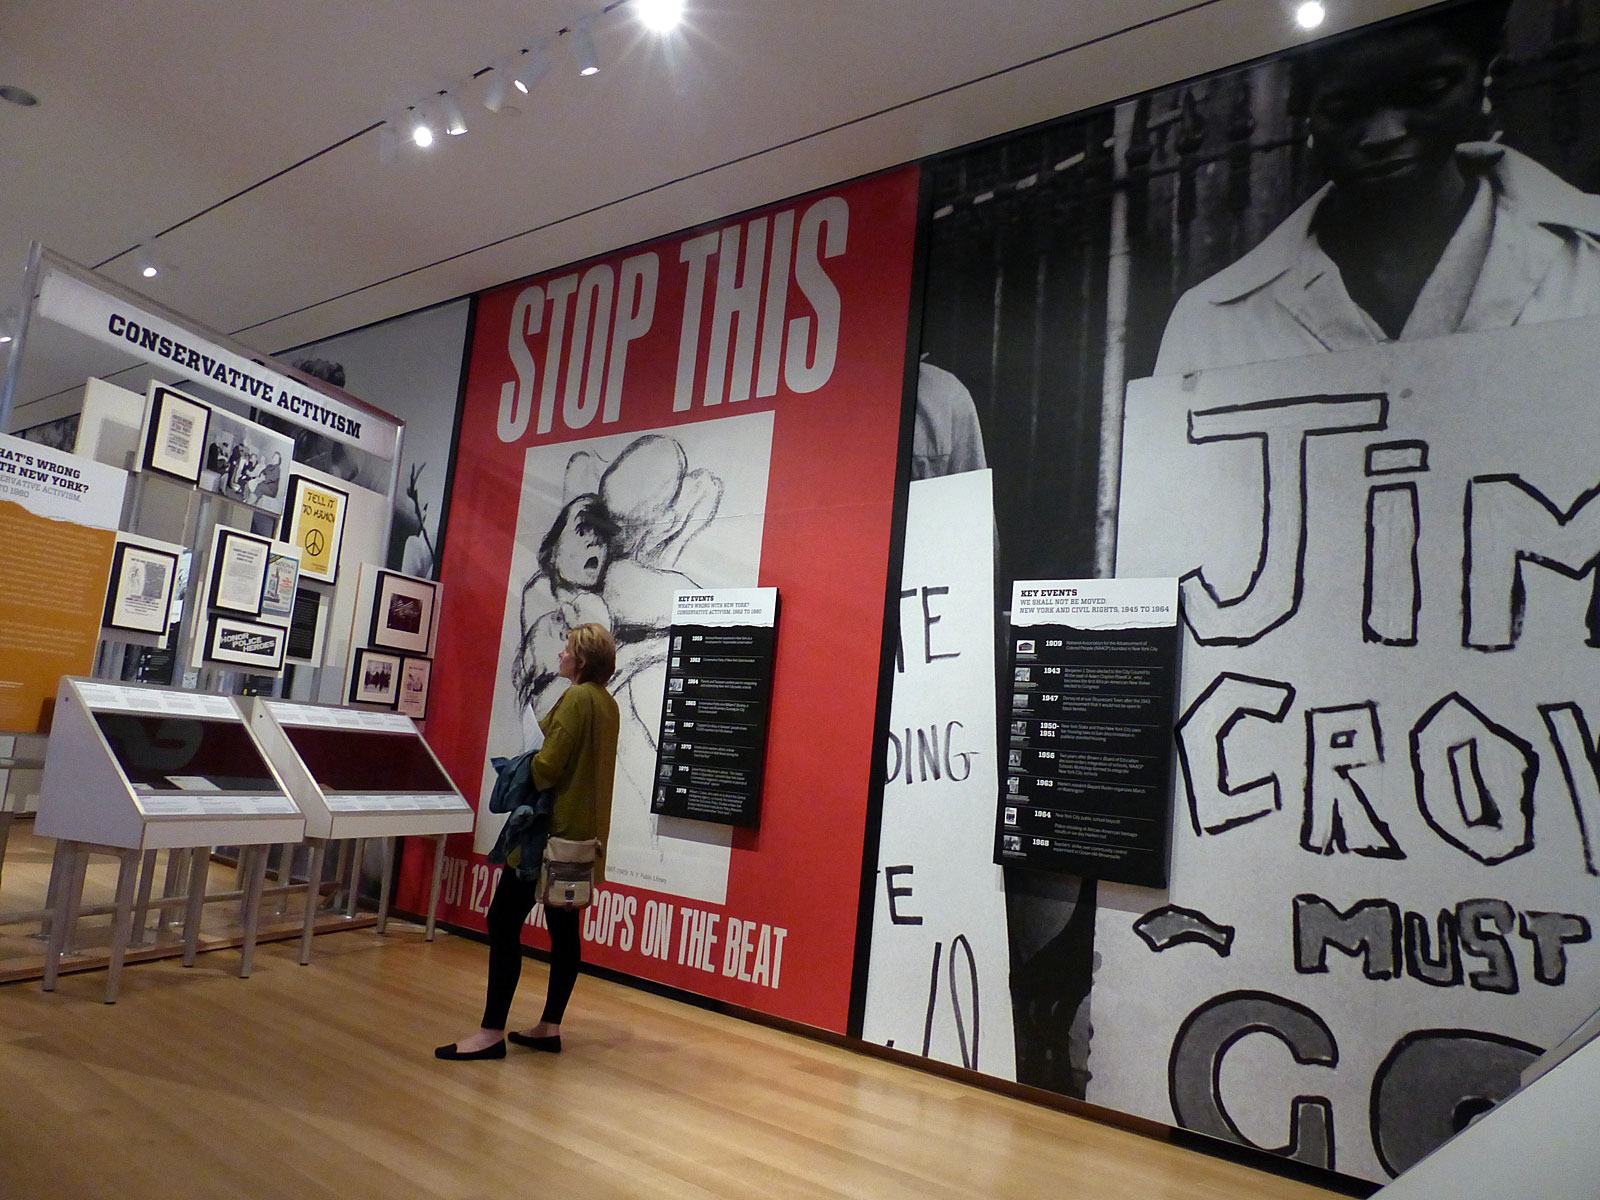 La fotografía es de la exposición Activist New York. Las secciones representadas en la fotografía son de la galería, bajo las secciones Derechos civiles y activismo conservador en la ciudad de Nueva York.